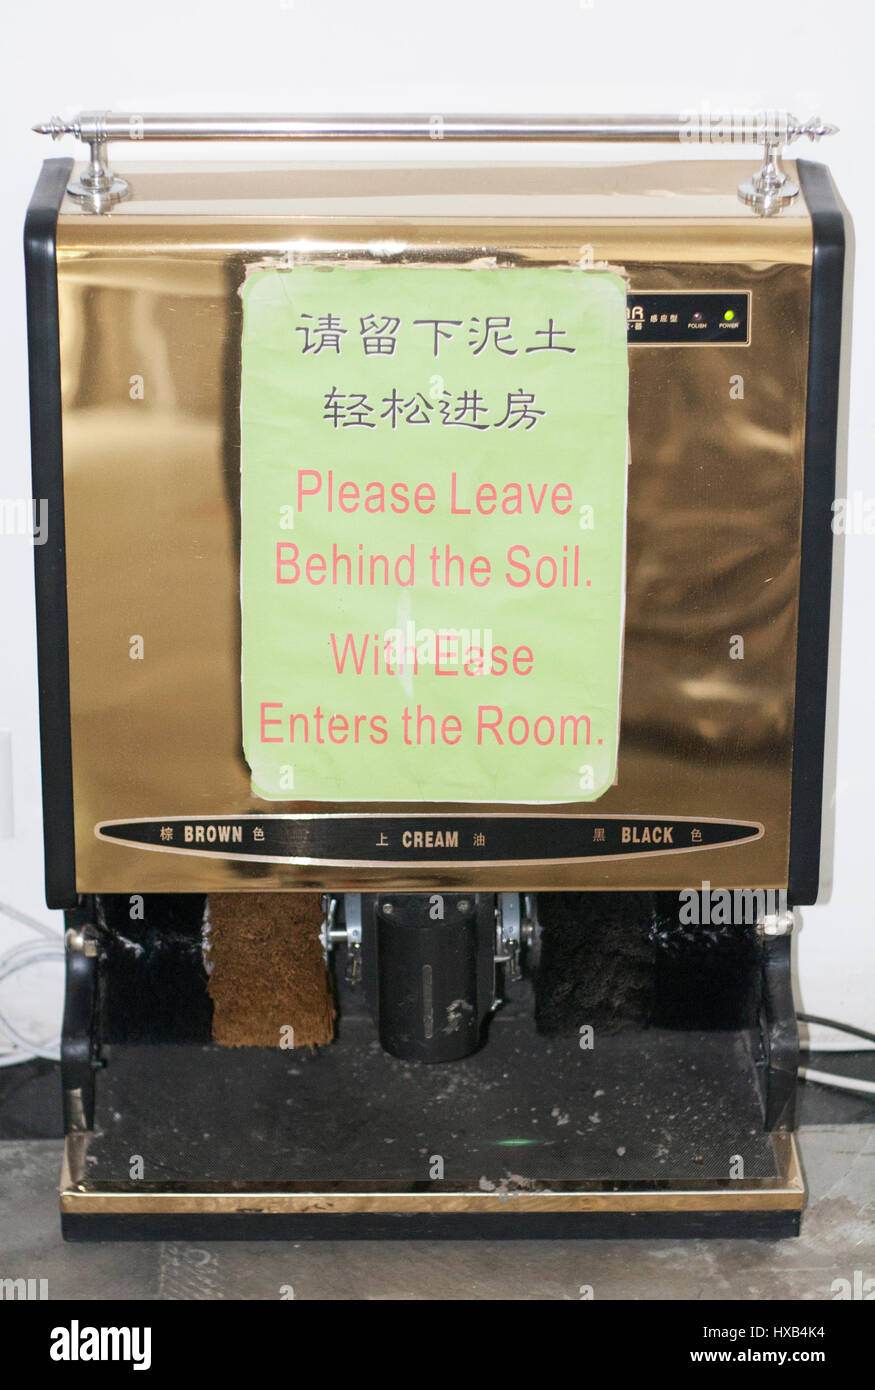 Schuhputzmaschine im chinesischen Hotel mit Schild in englischer Sprache  Stockfotografie - Alamy